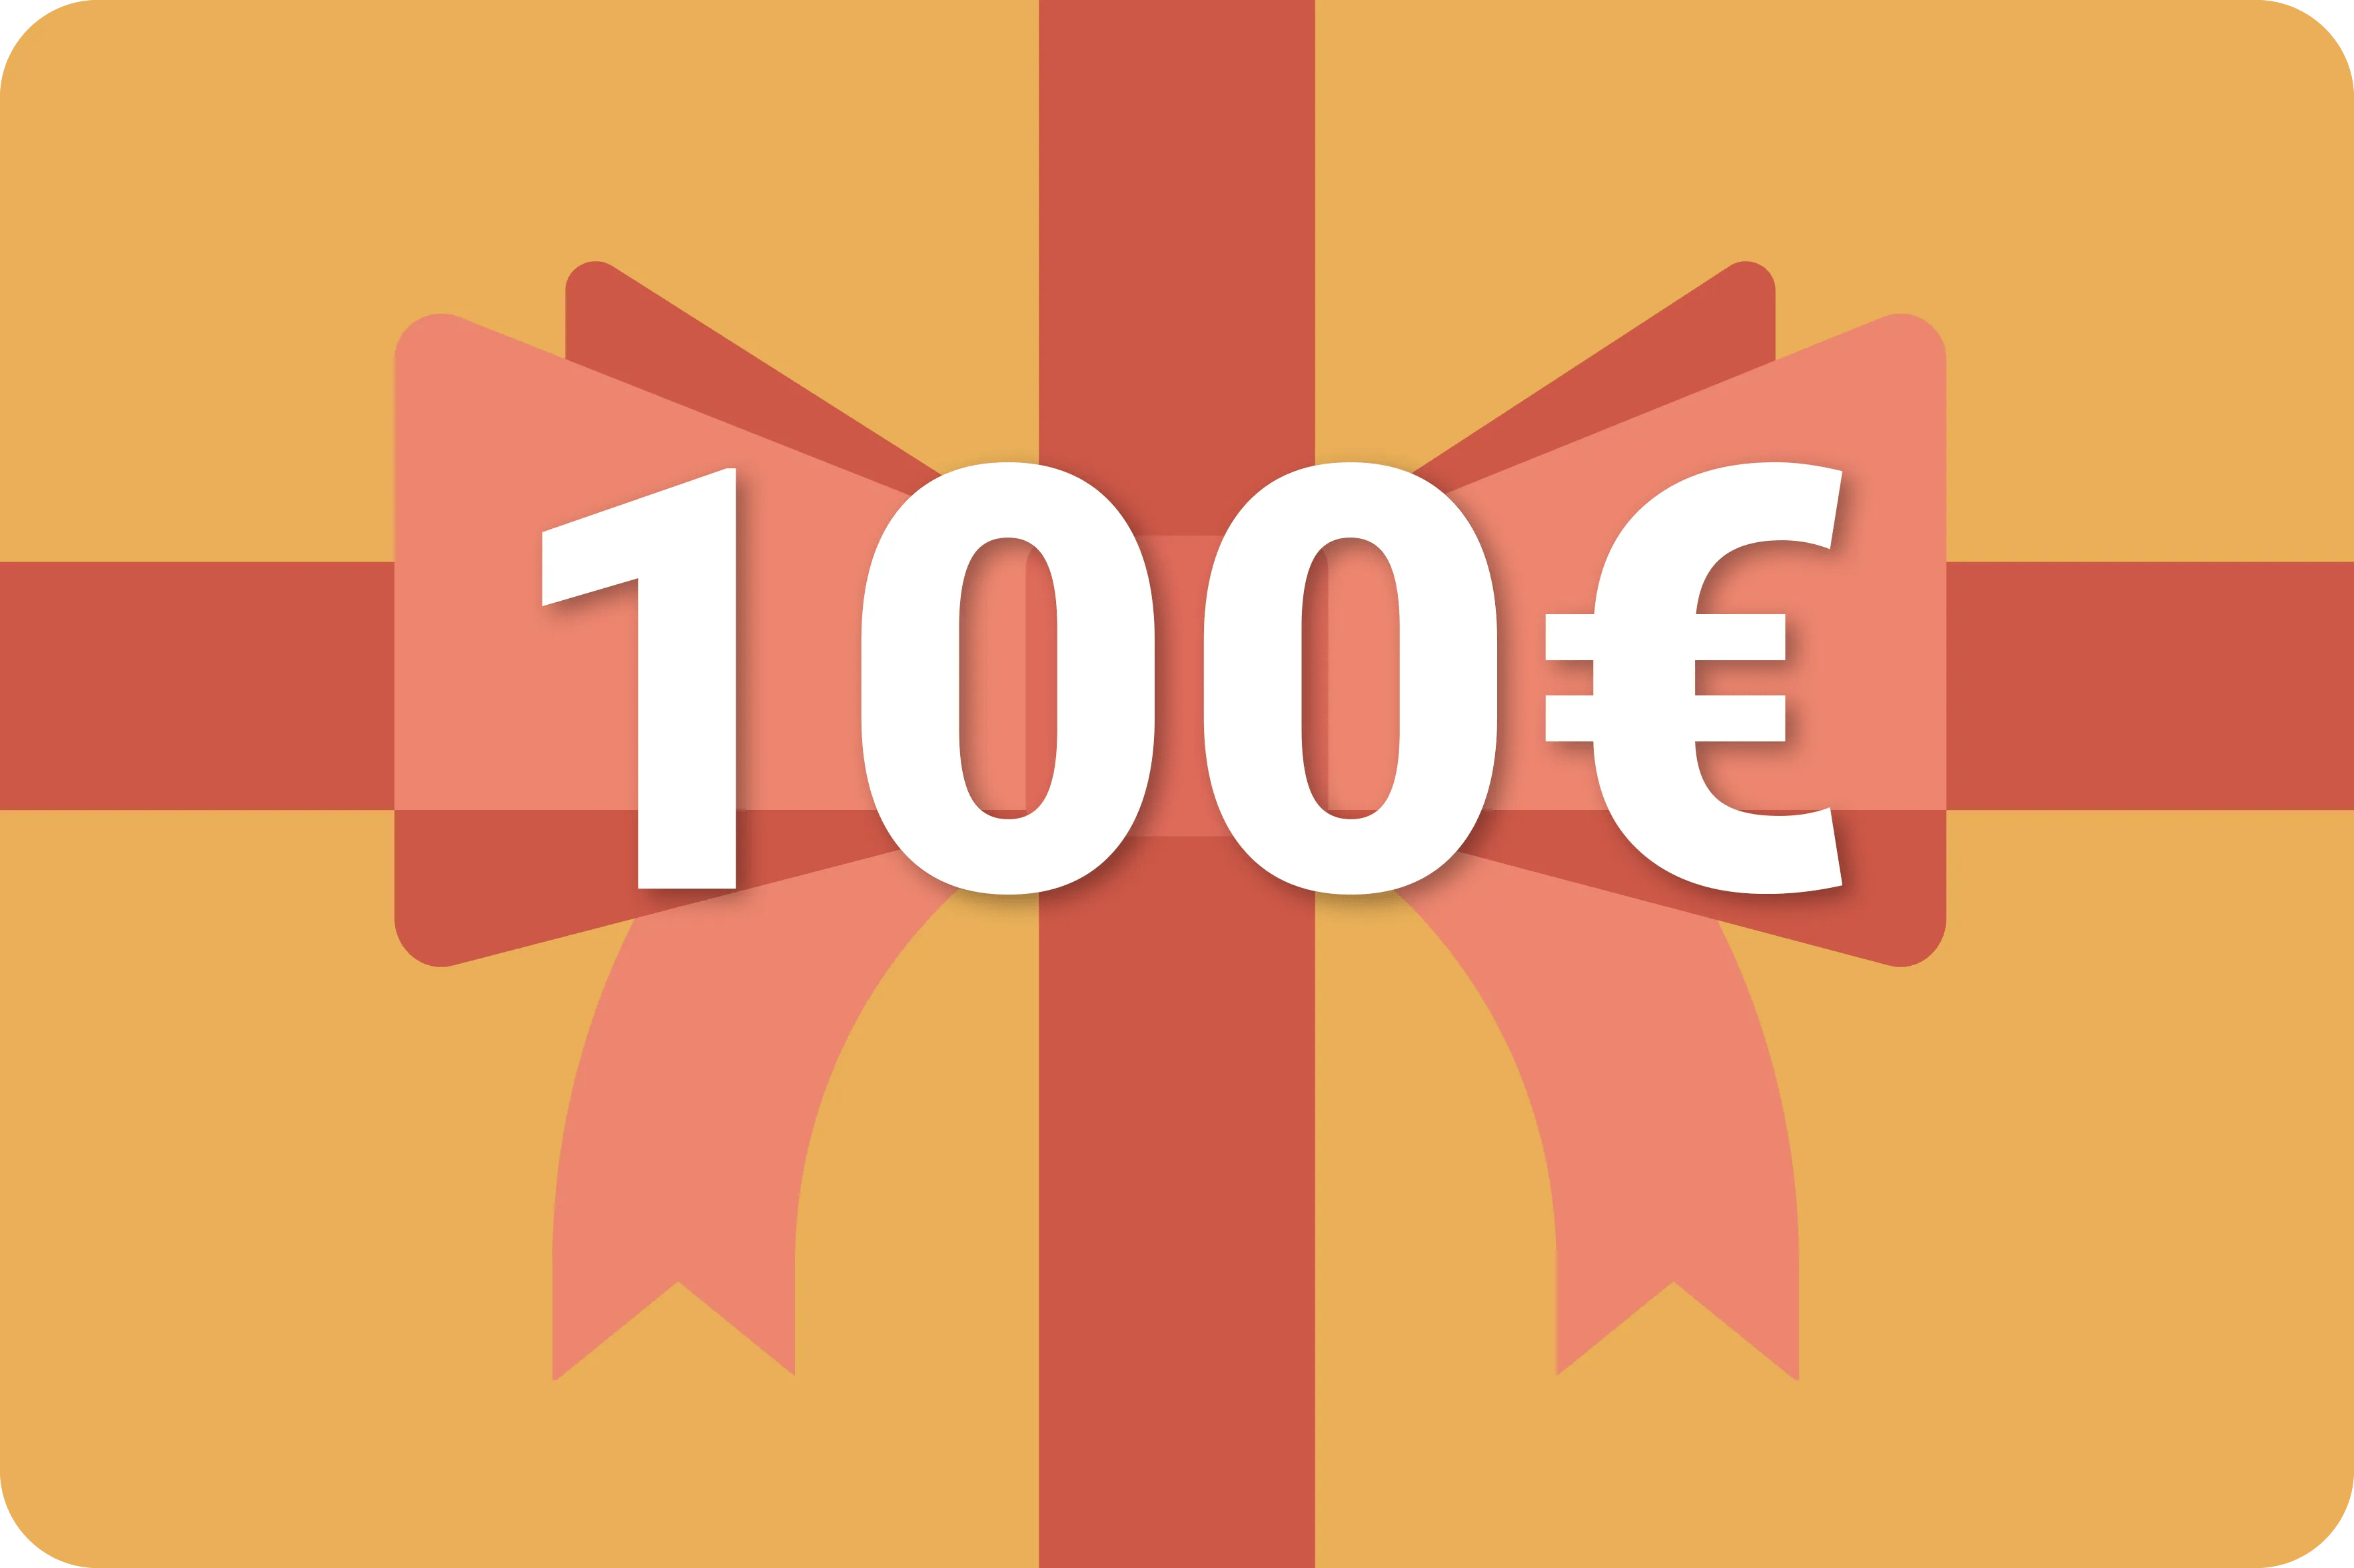 koffer-direkt.de gift voucher 100€